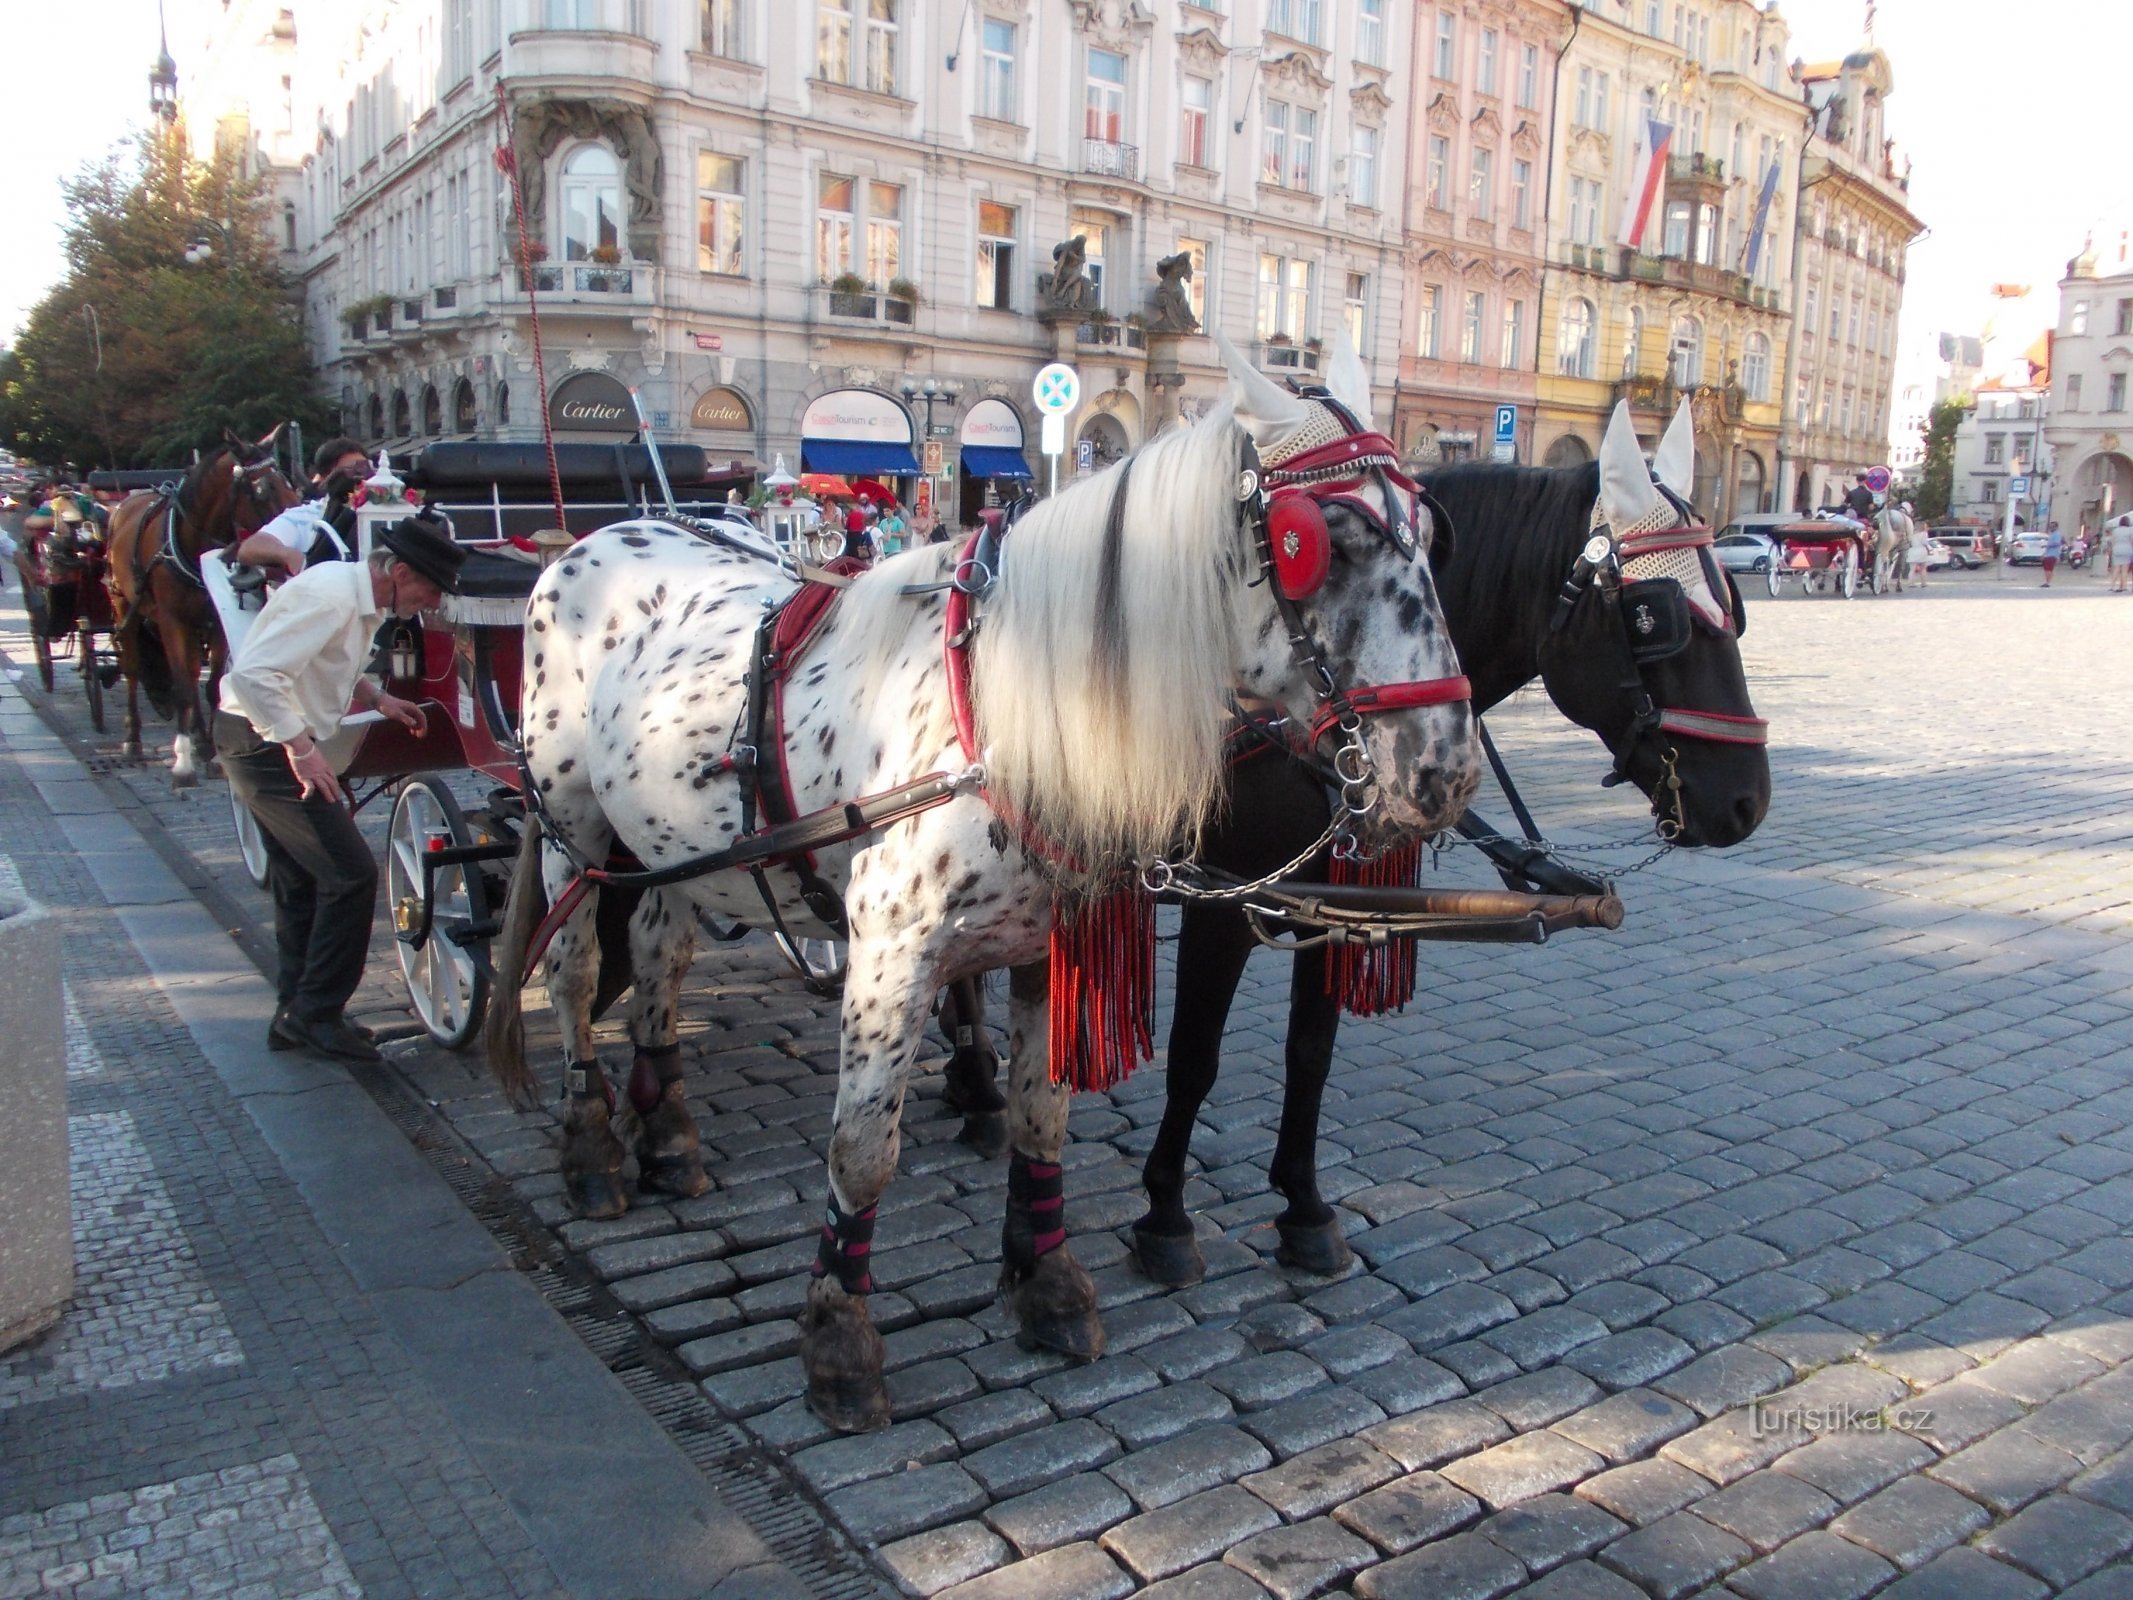 kom ind og lad dig køre rundt i det gamle Prag